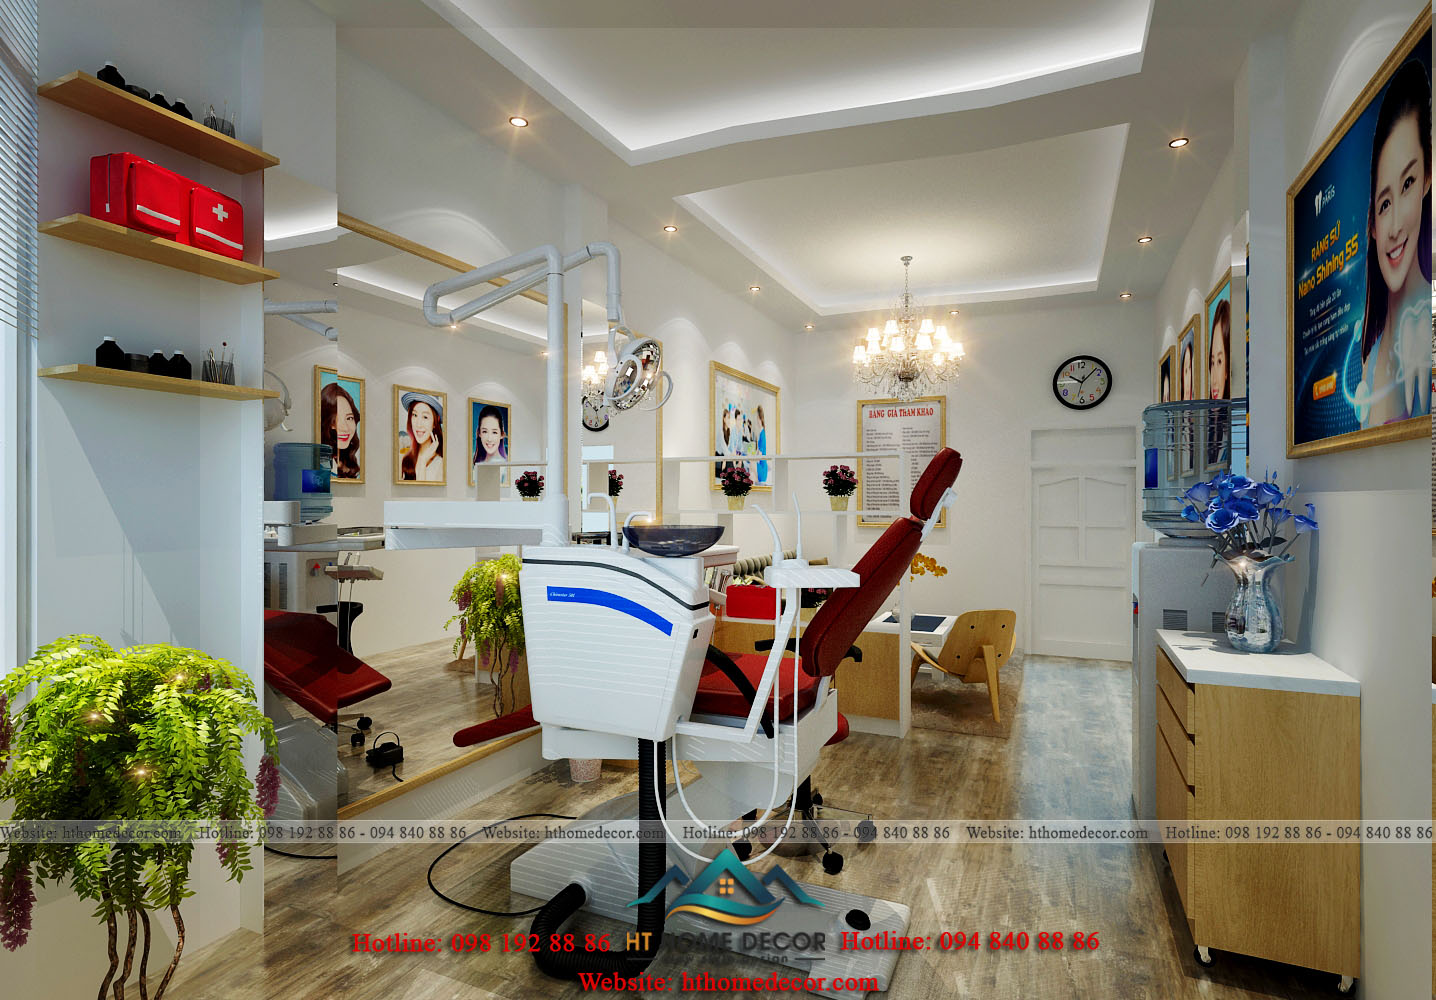 Bên cạnh nội thất phòng khám răng bắt mắt. Sử dụng thiết bị hiện đại, mang đến hiệu quả tốt nhất cho khách hàng